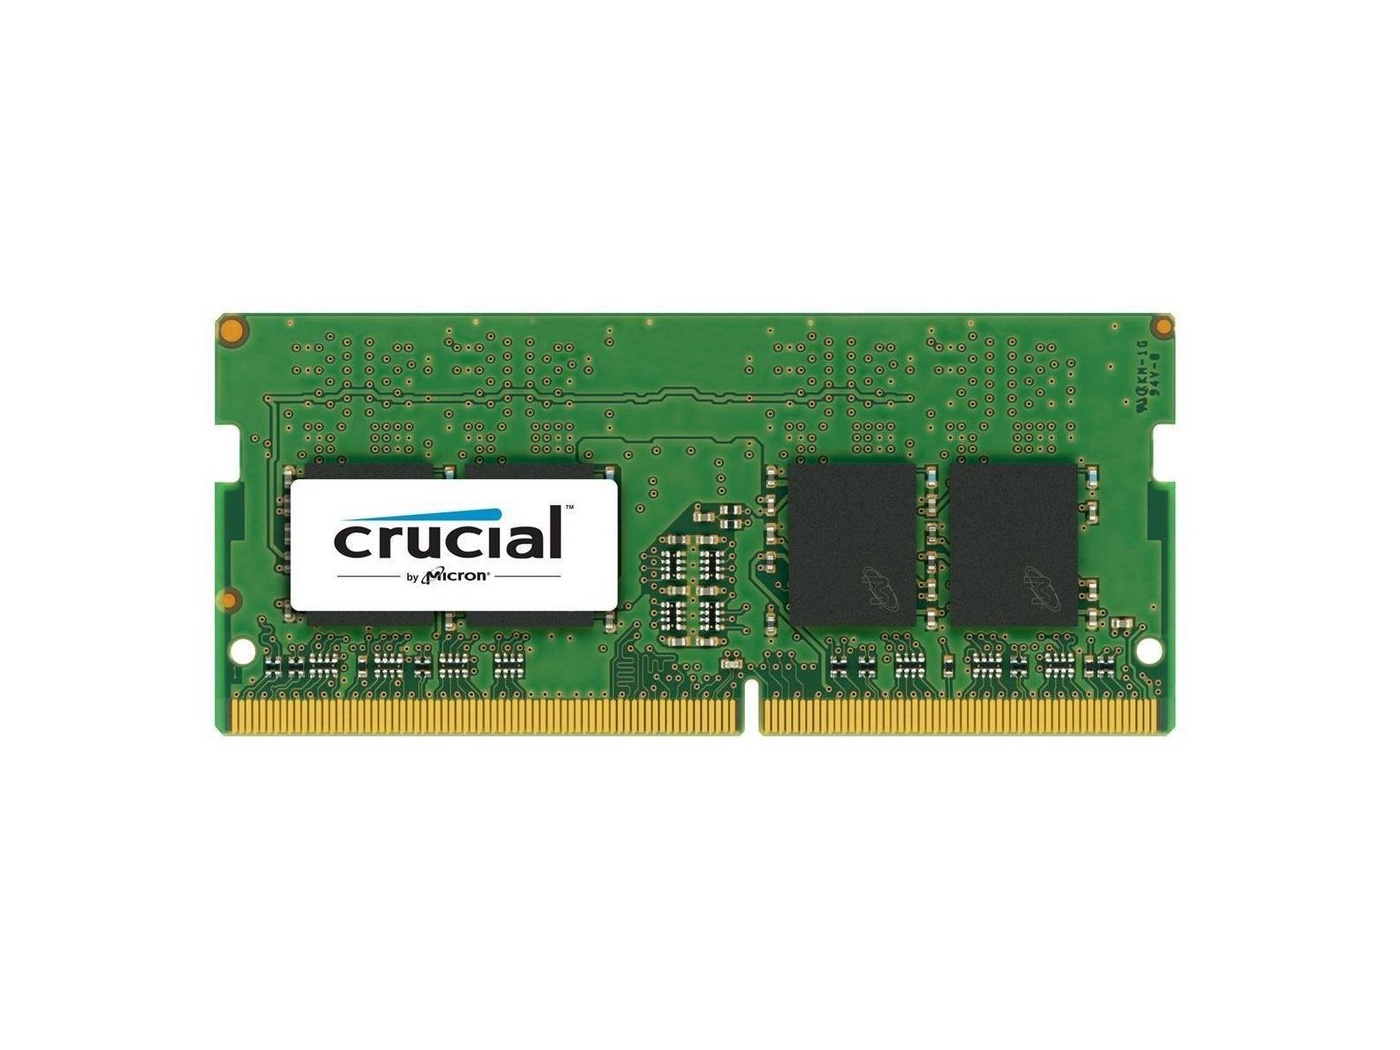 Bild von 8GB DDR4 PC4-19200 SO-DIMM (CT8G4SFS824A)